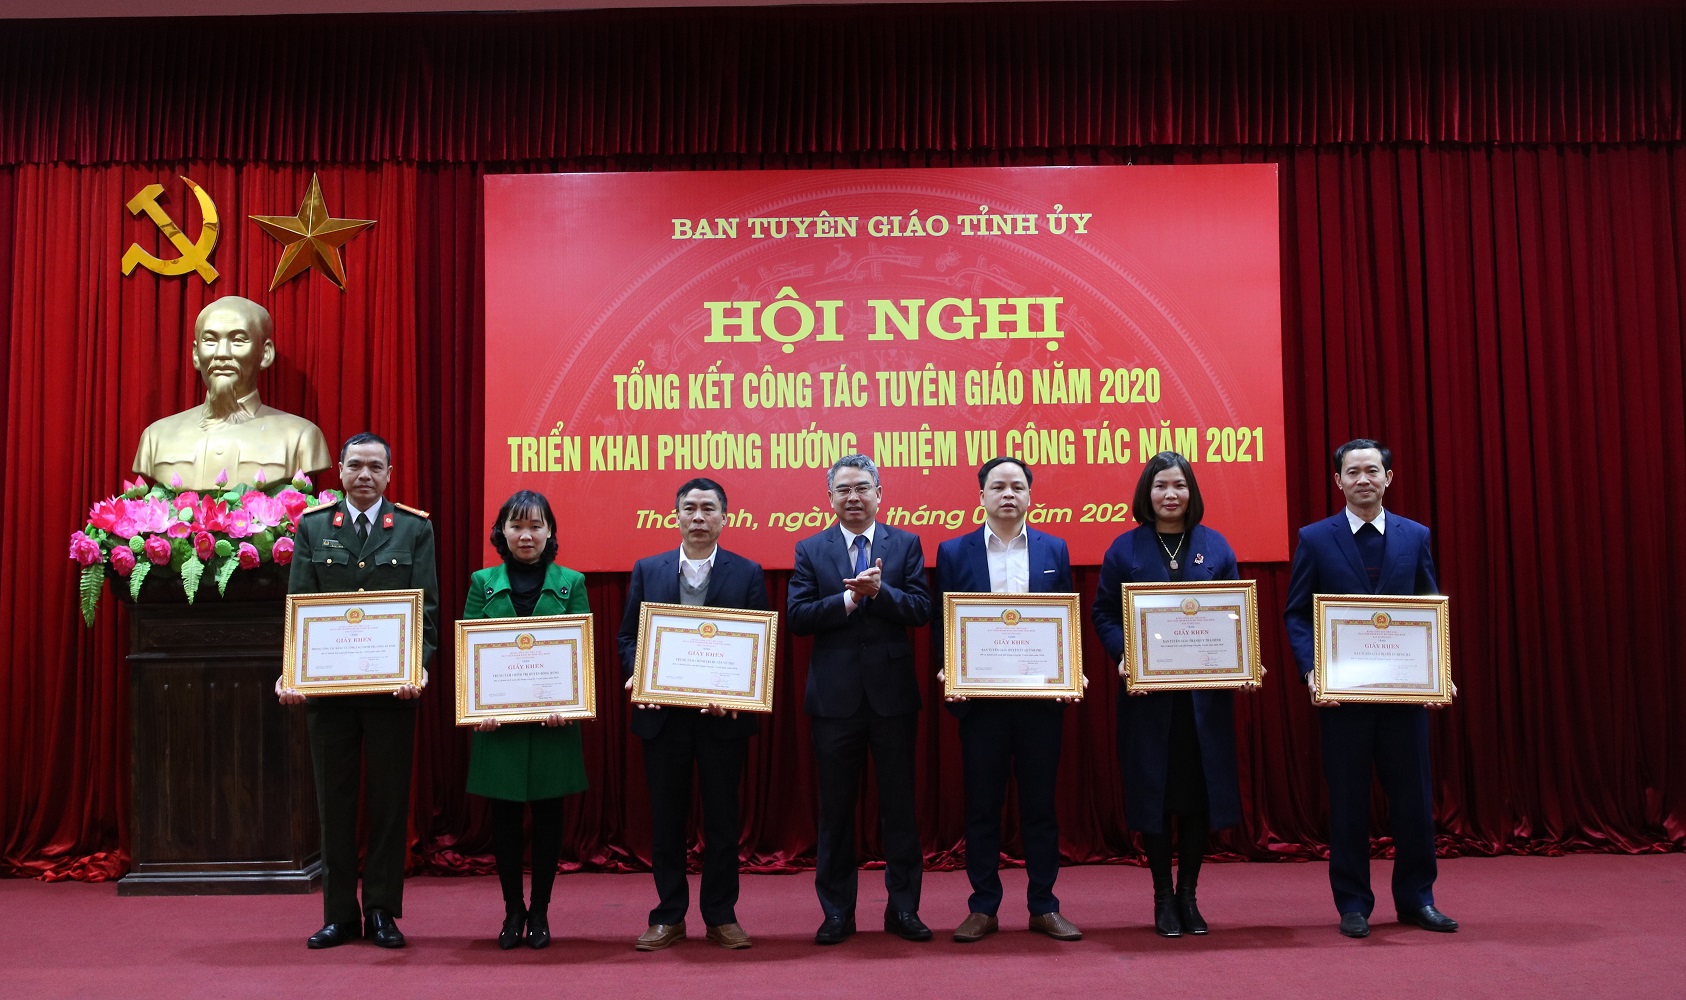 Đồng chí Phạm Đồng Thụy, Trưởng ban Tuyên giáo Tỉnh ủy Thái Bình tặng Bằng khen cho các tập thể có thành tích xuất sắc trong công tác Tuyên giáo năm 2020. (Ảnh: TA)